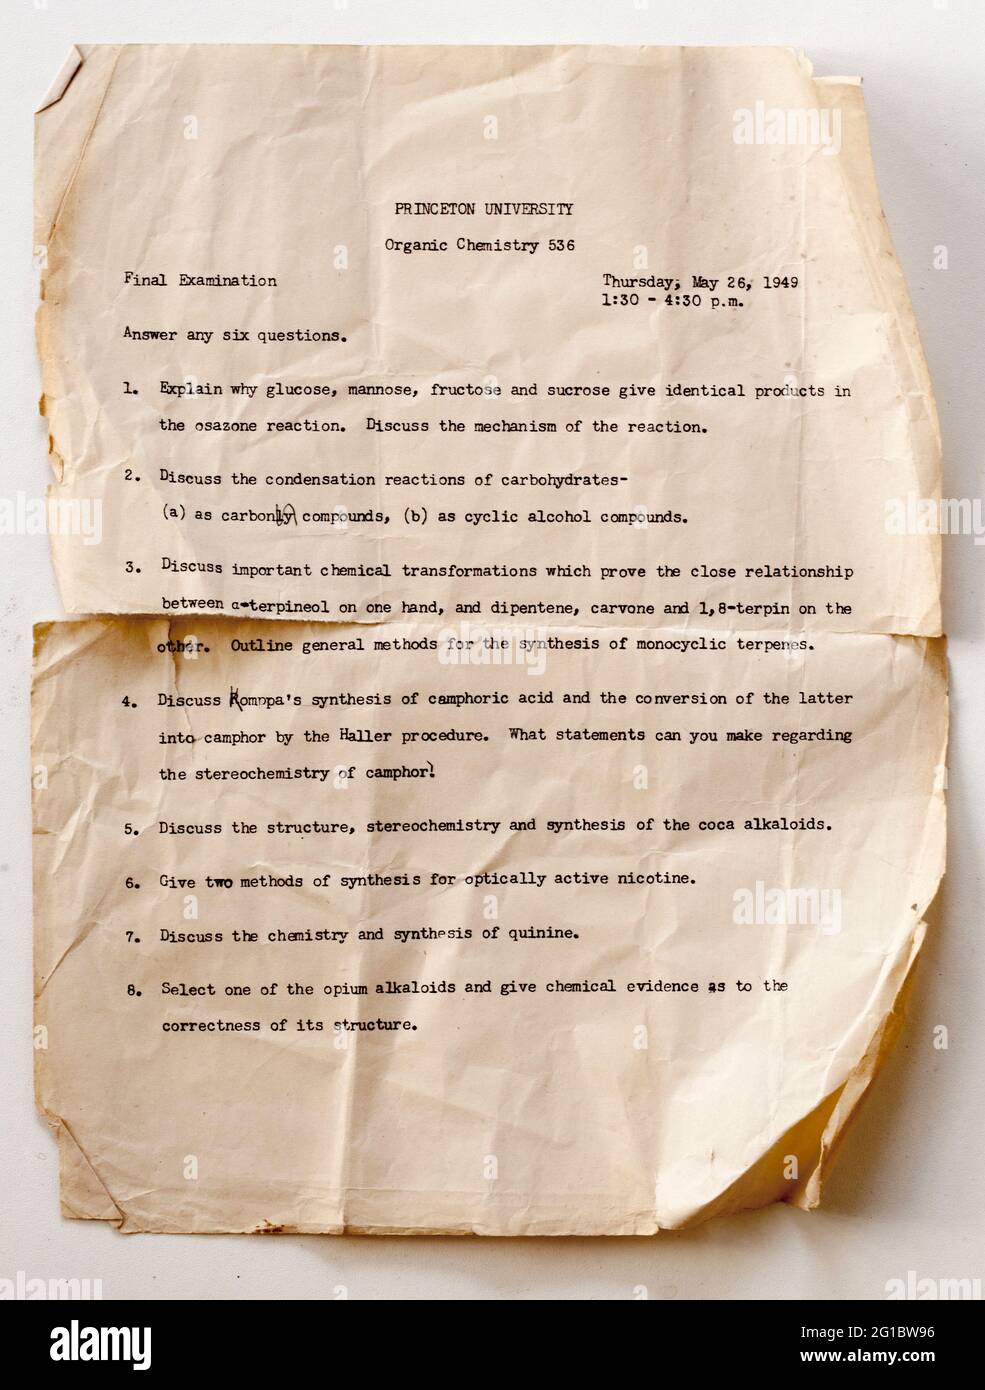 Document d'examen de l'Université de Princeton des années 1940 - Chimie organique Banque D'Images